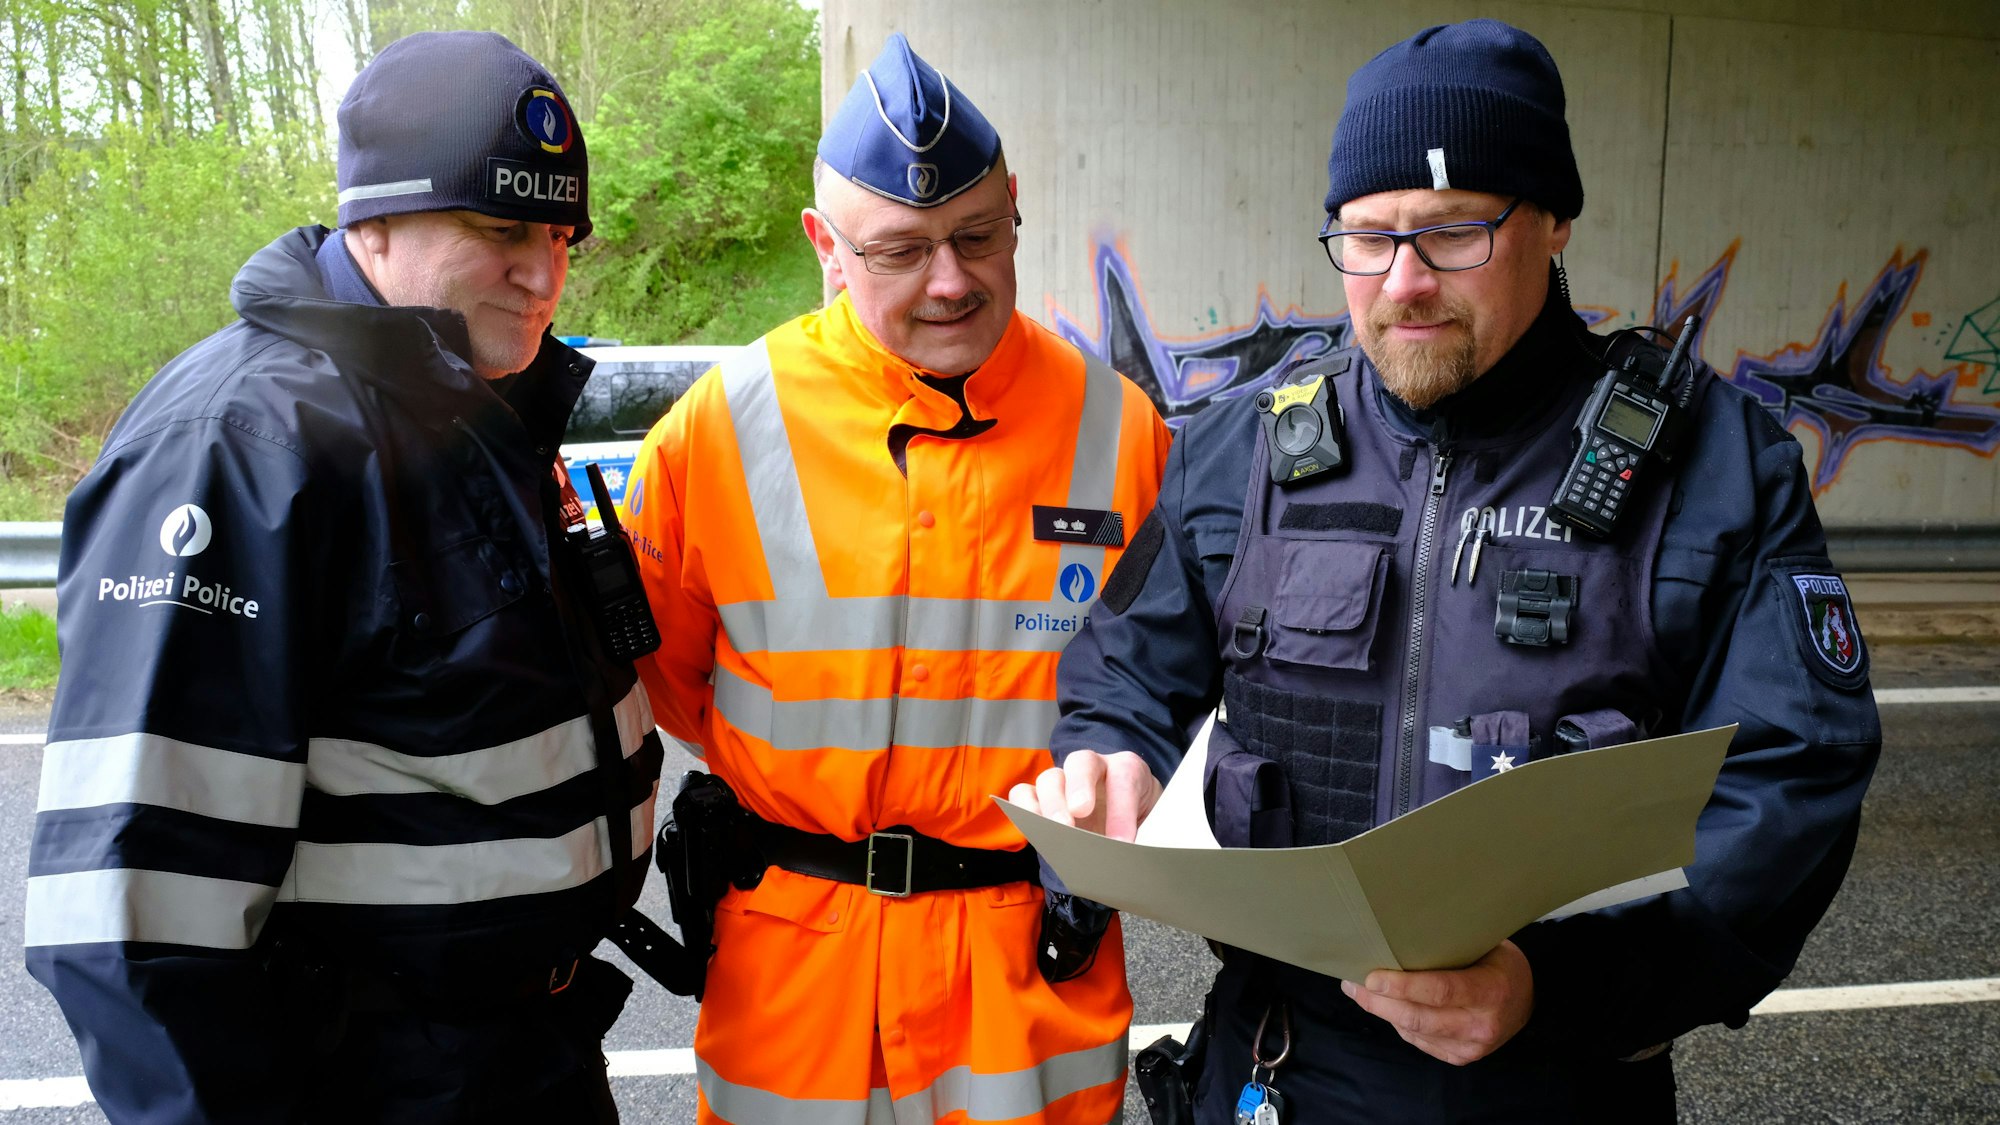 Polizei-Einsatzleiter Volker Braun (r.) steht mit seinen belgischen Kollegen Christoph Kever (M.) und Patrick Fleuster an der Kontrollstelle bei Dahlem.